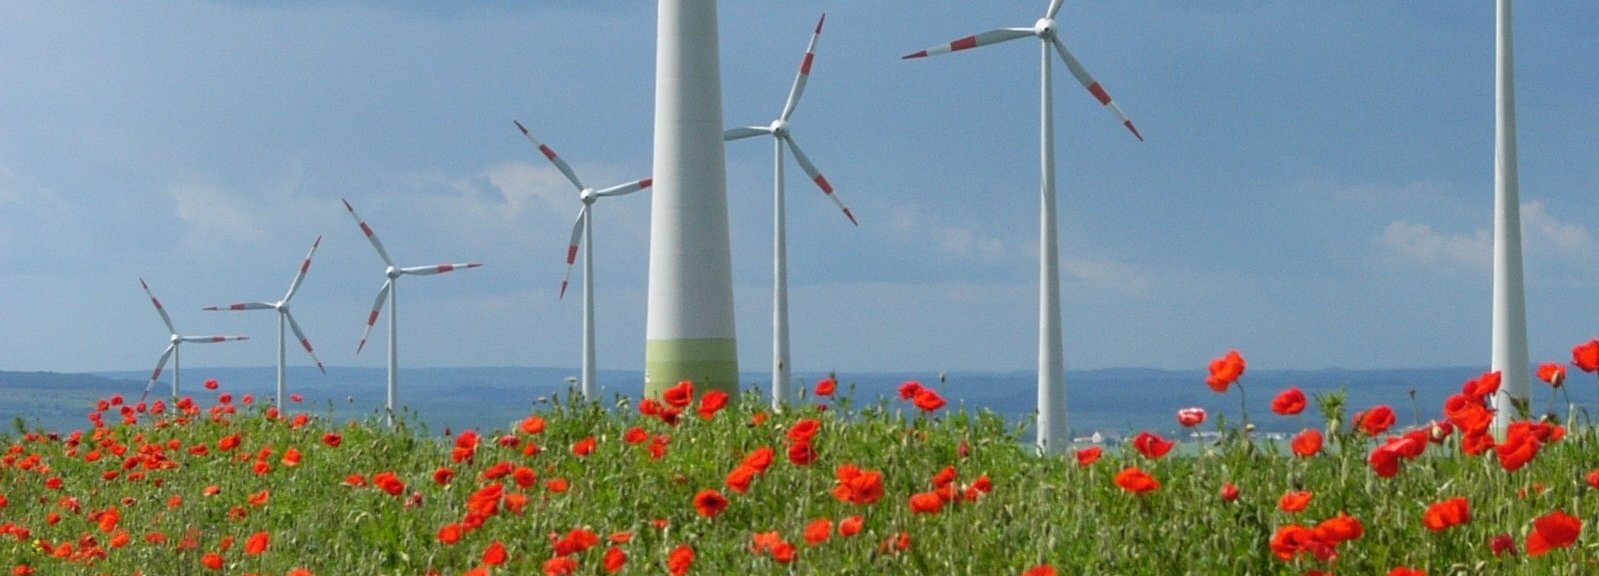 Windpark mit vielen Windrädern auf einer roten Blumenwiese